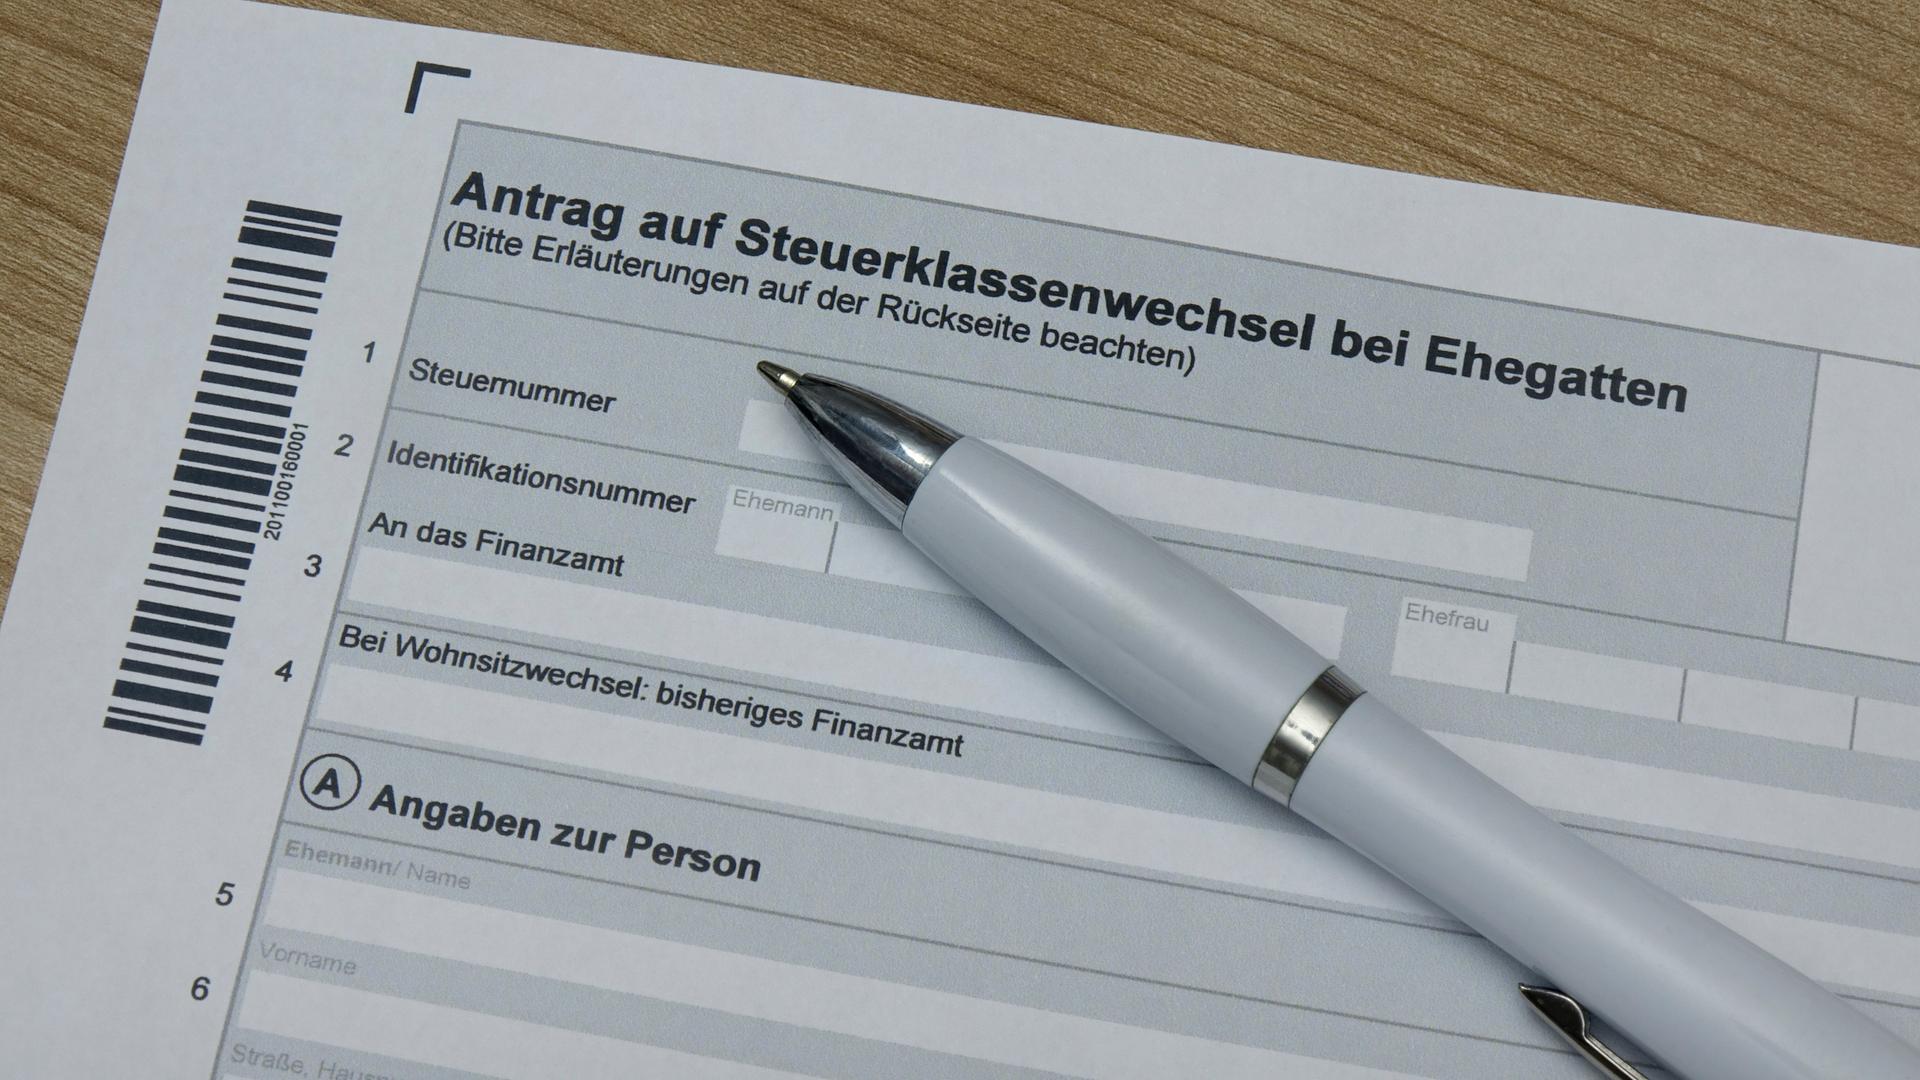 Auf einem ausgedruckten Antragsformular liegt ein Kugelschreiber. Das Formular trägt die Überschrift „Antrag auf Steuerklassenwechsel bei Ehegatten“ 